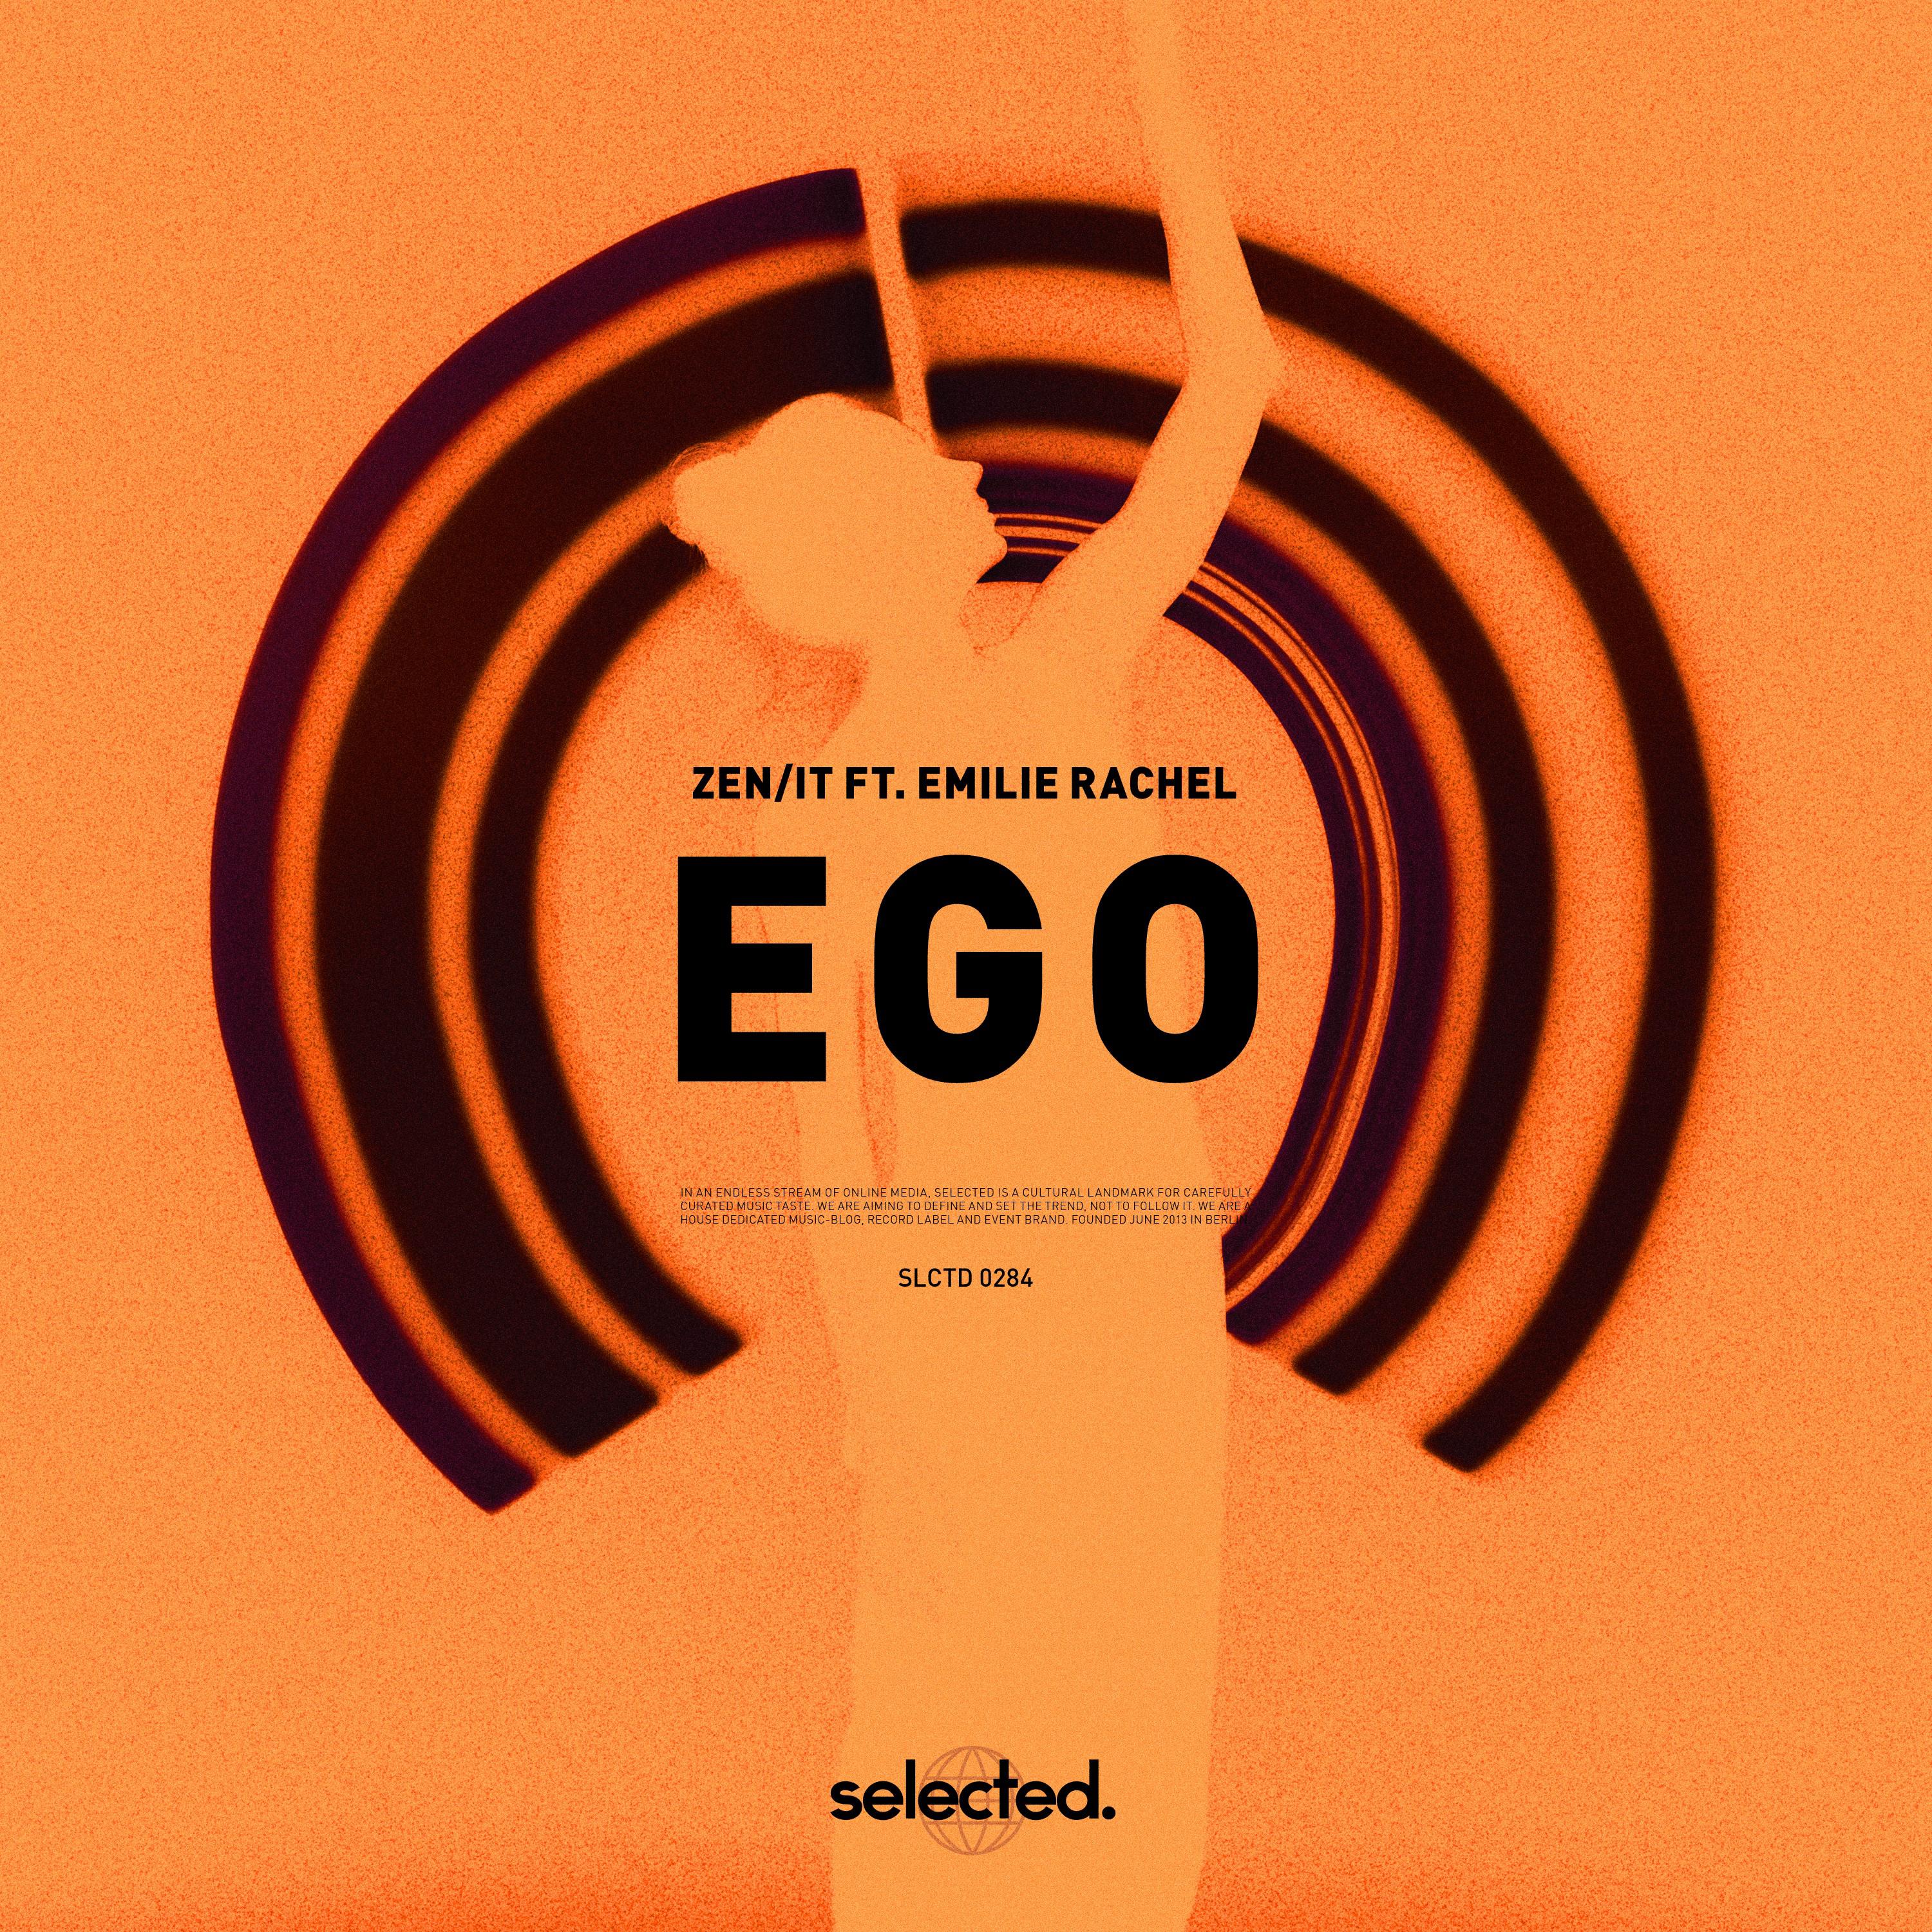 Zen/it - Ego